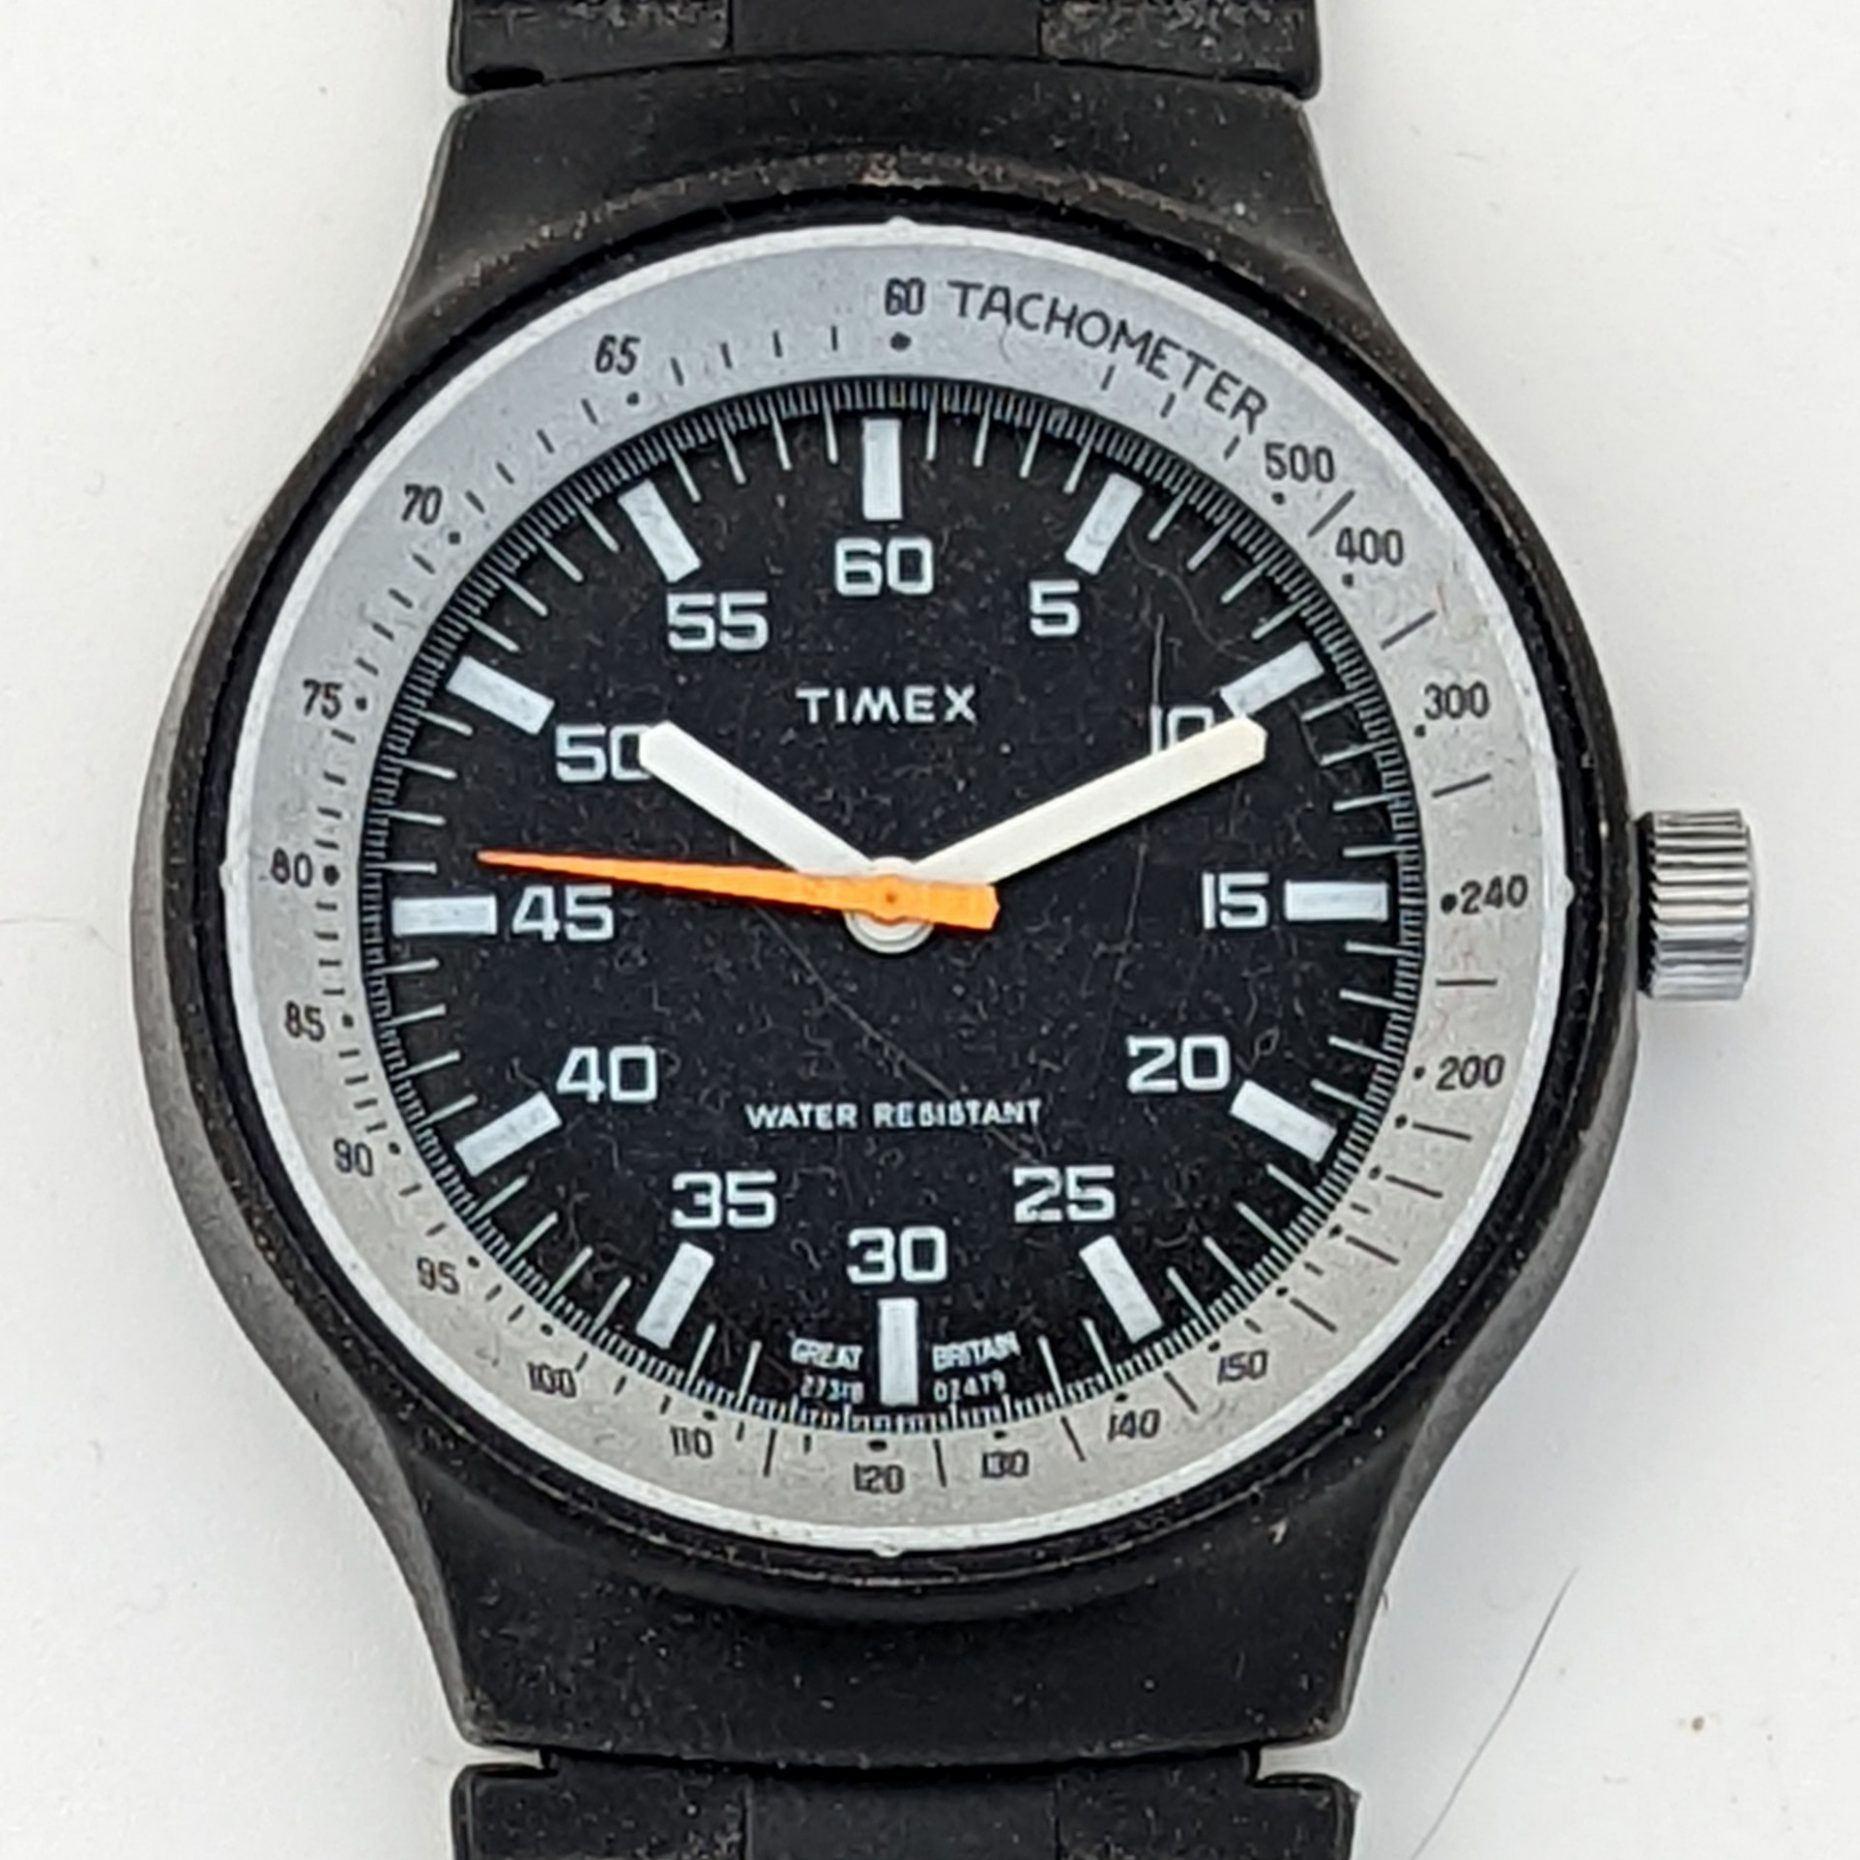 Timex Marlin 26359 02478 [1978] Black Max